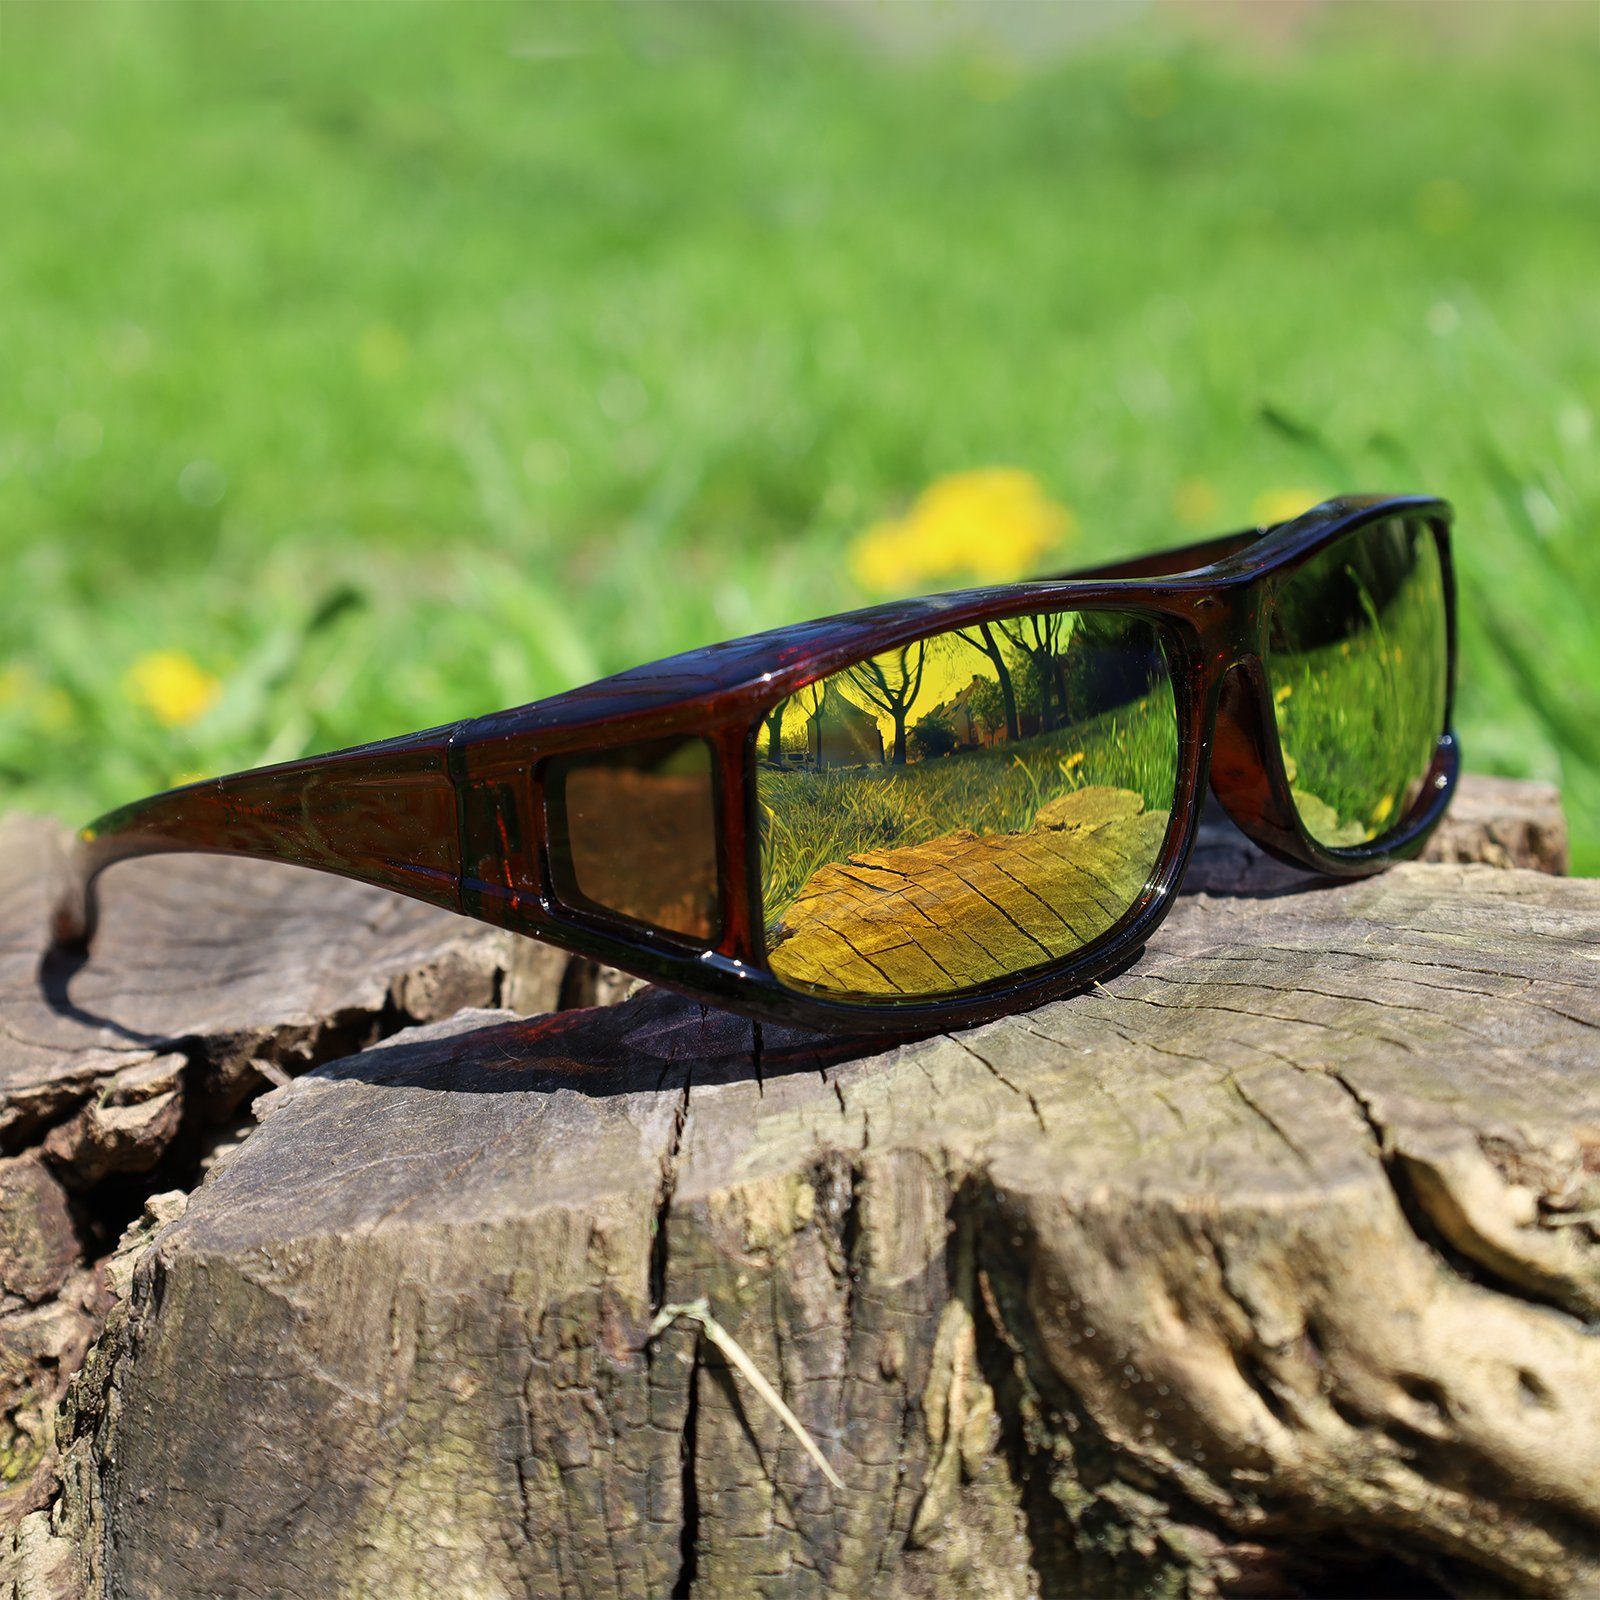 Glänzend für polarisierte, Herren Classic UV ActiveSol Sonnenbrille Braun 400 SUNGLASSES Überziehsonnenbrille